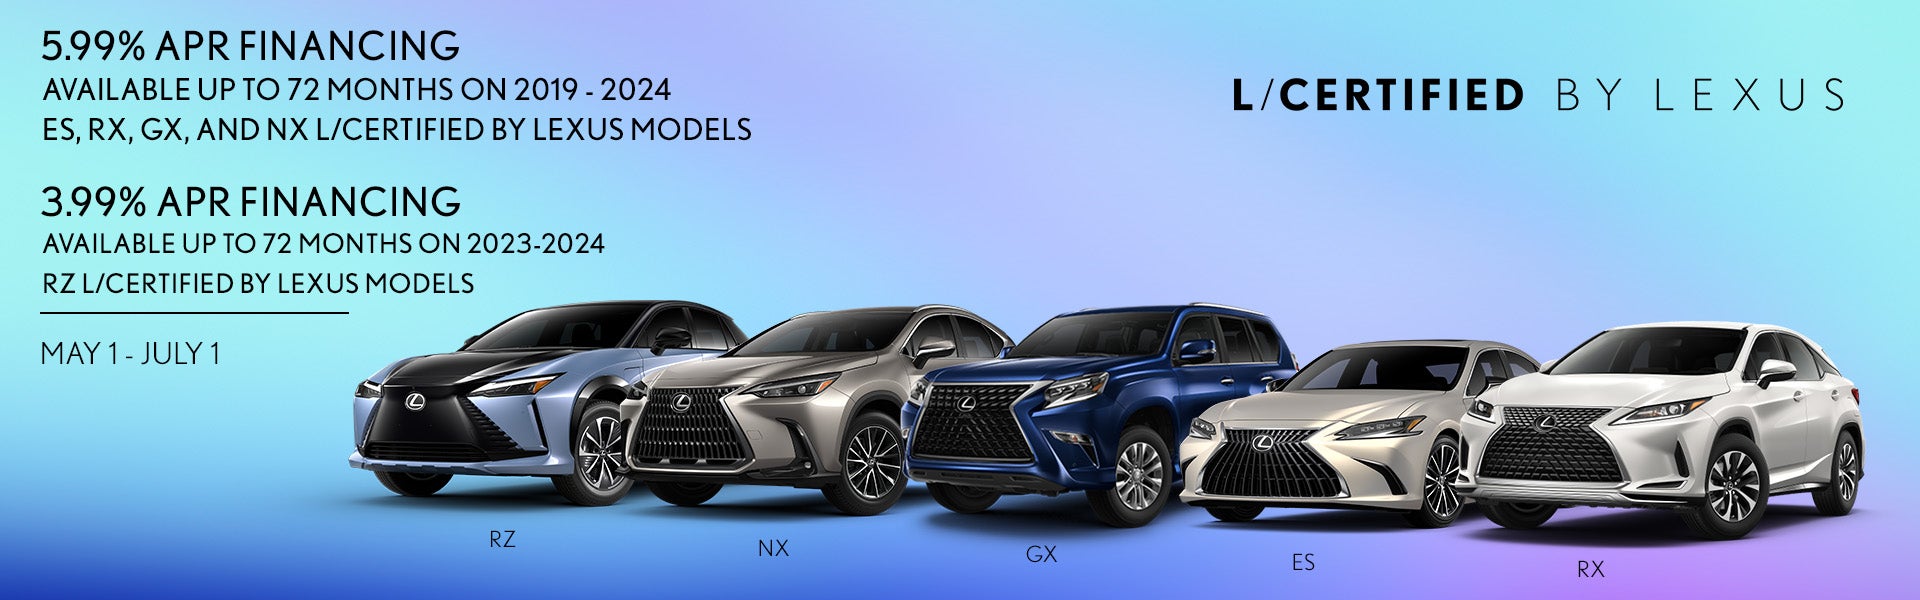 L/Certified By Lexus